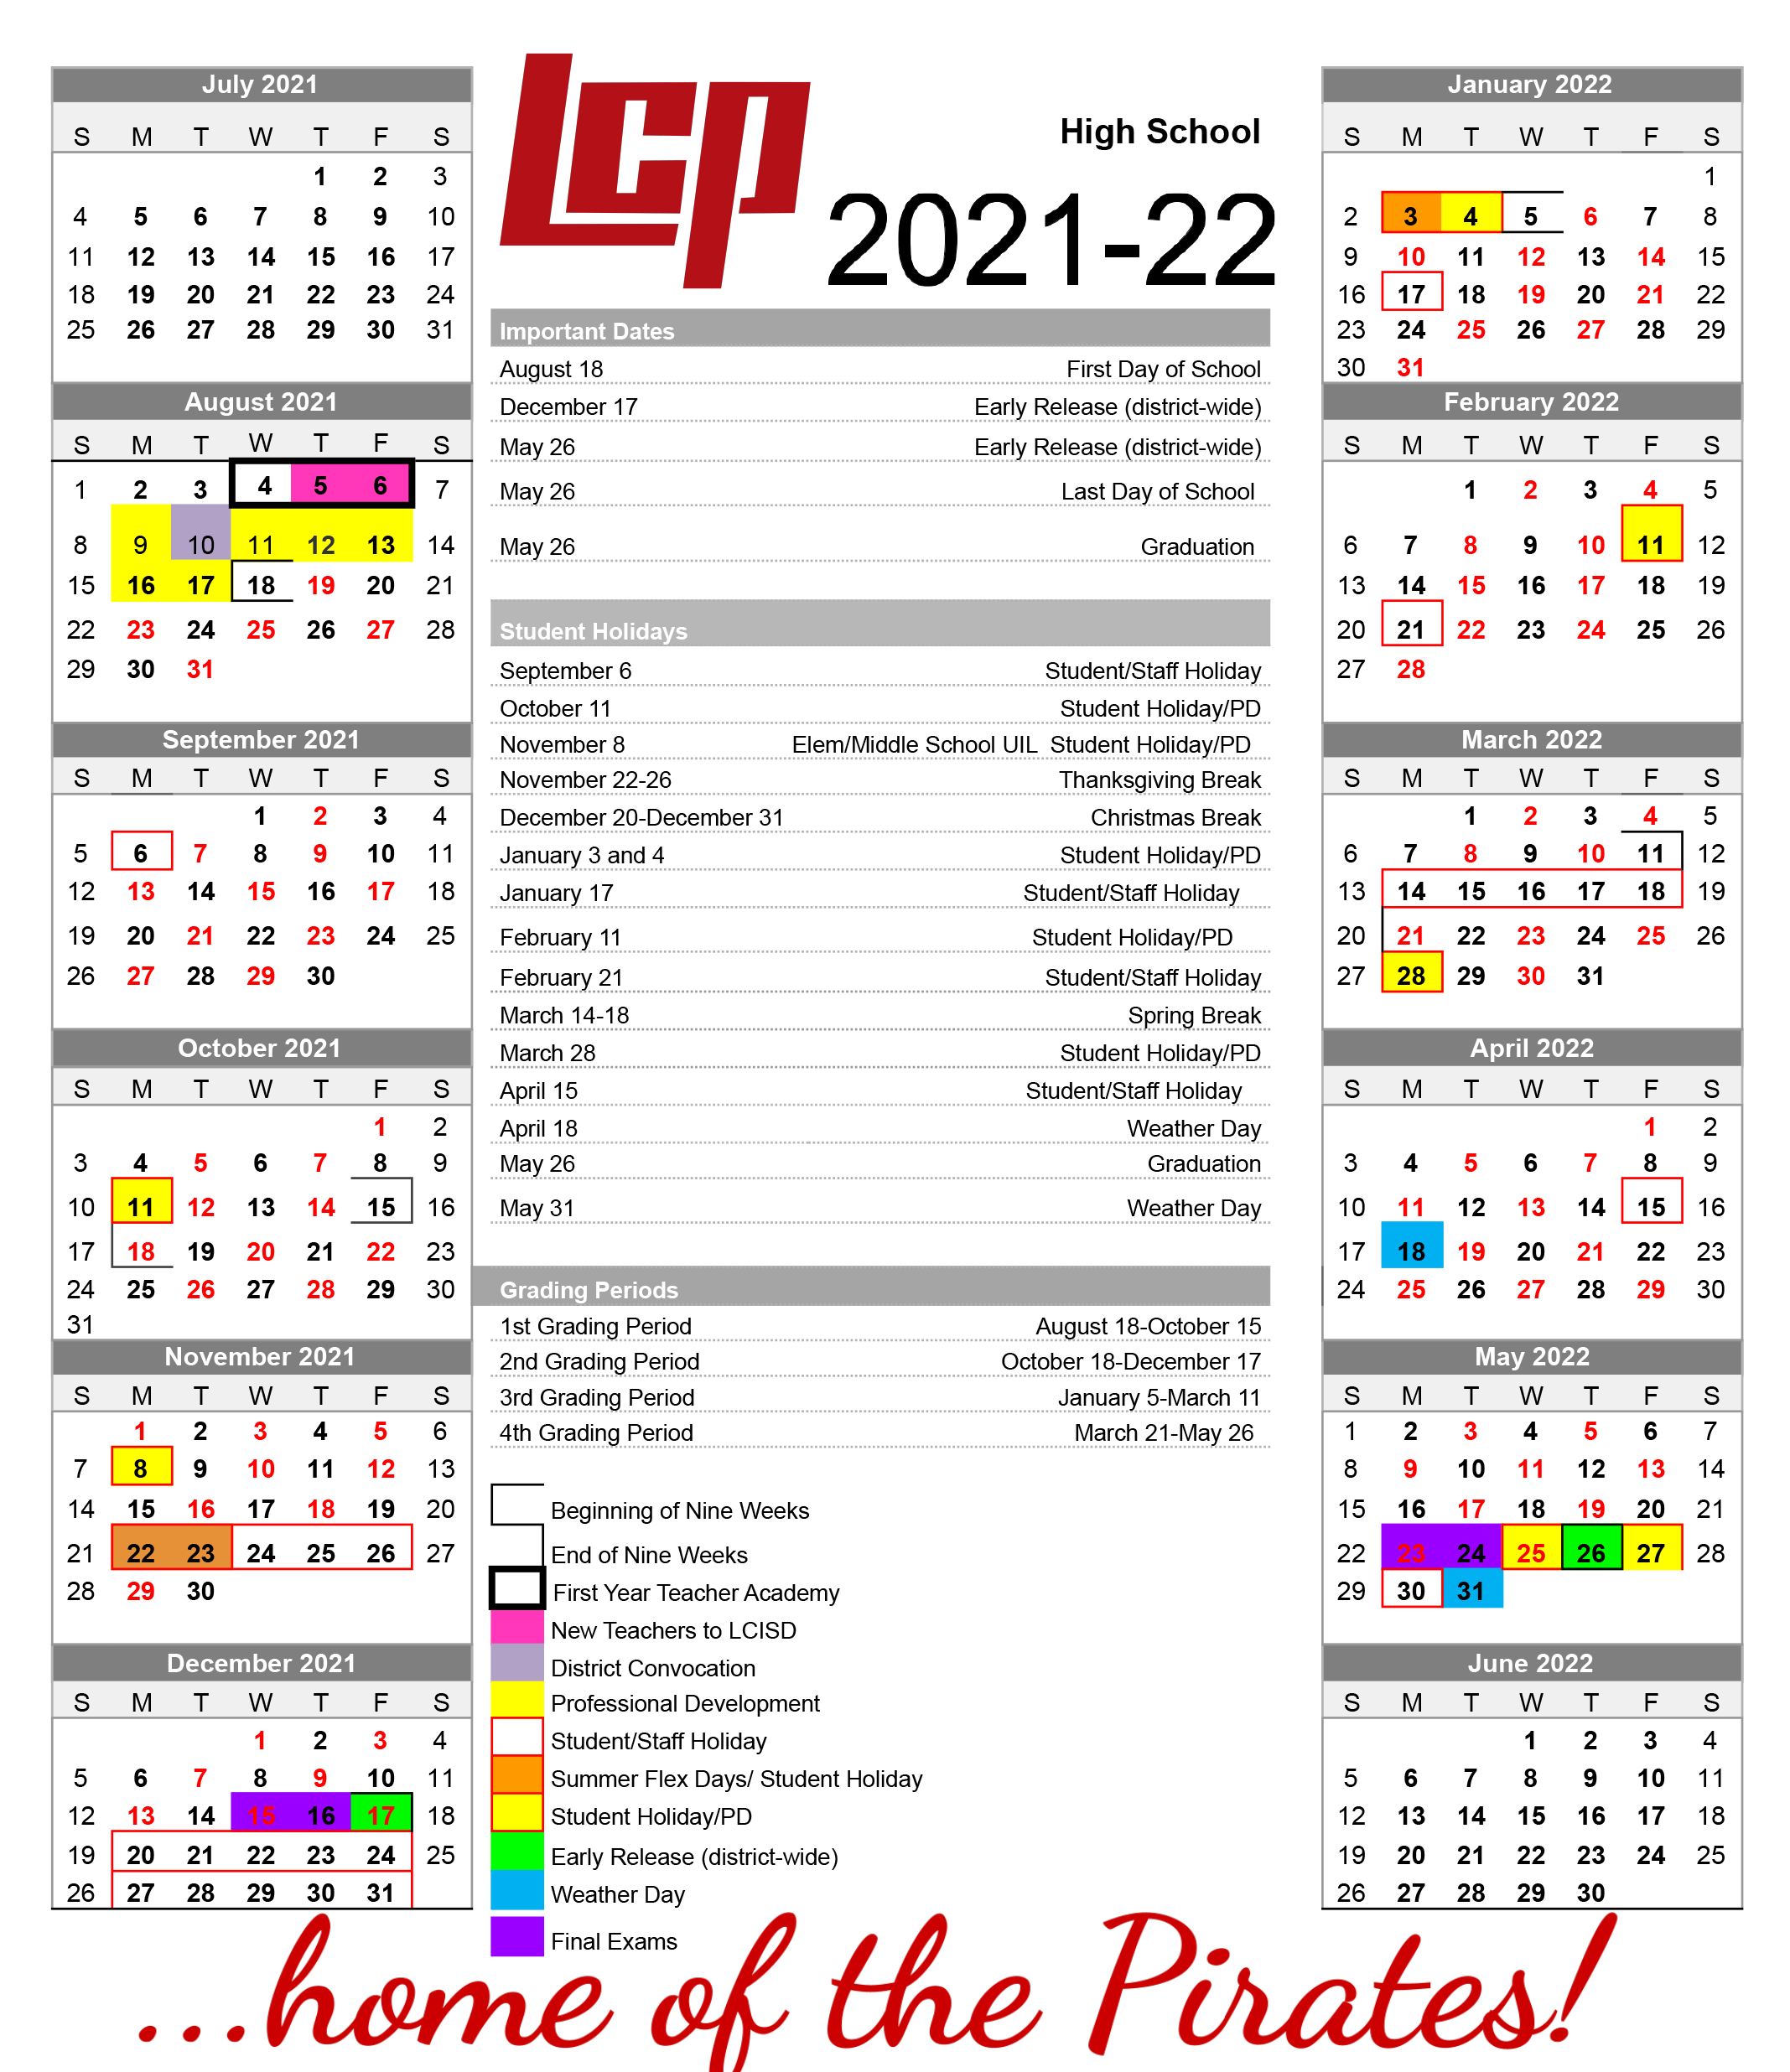 Proctor High School Calendar 2023 - Schoolcalendars.net